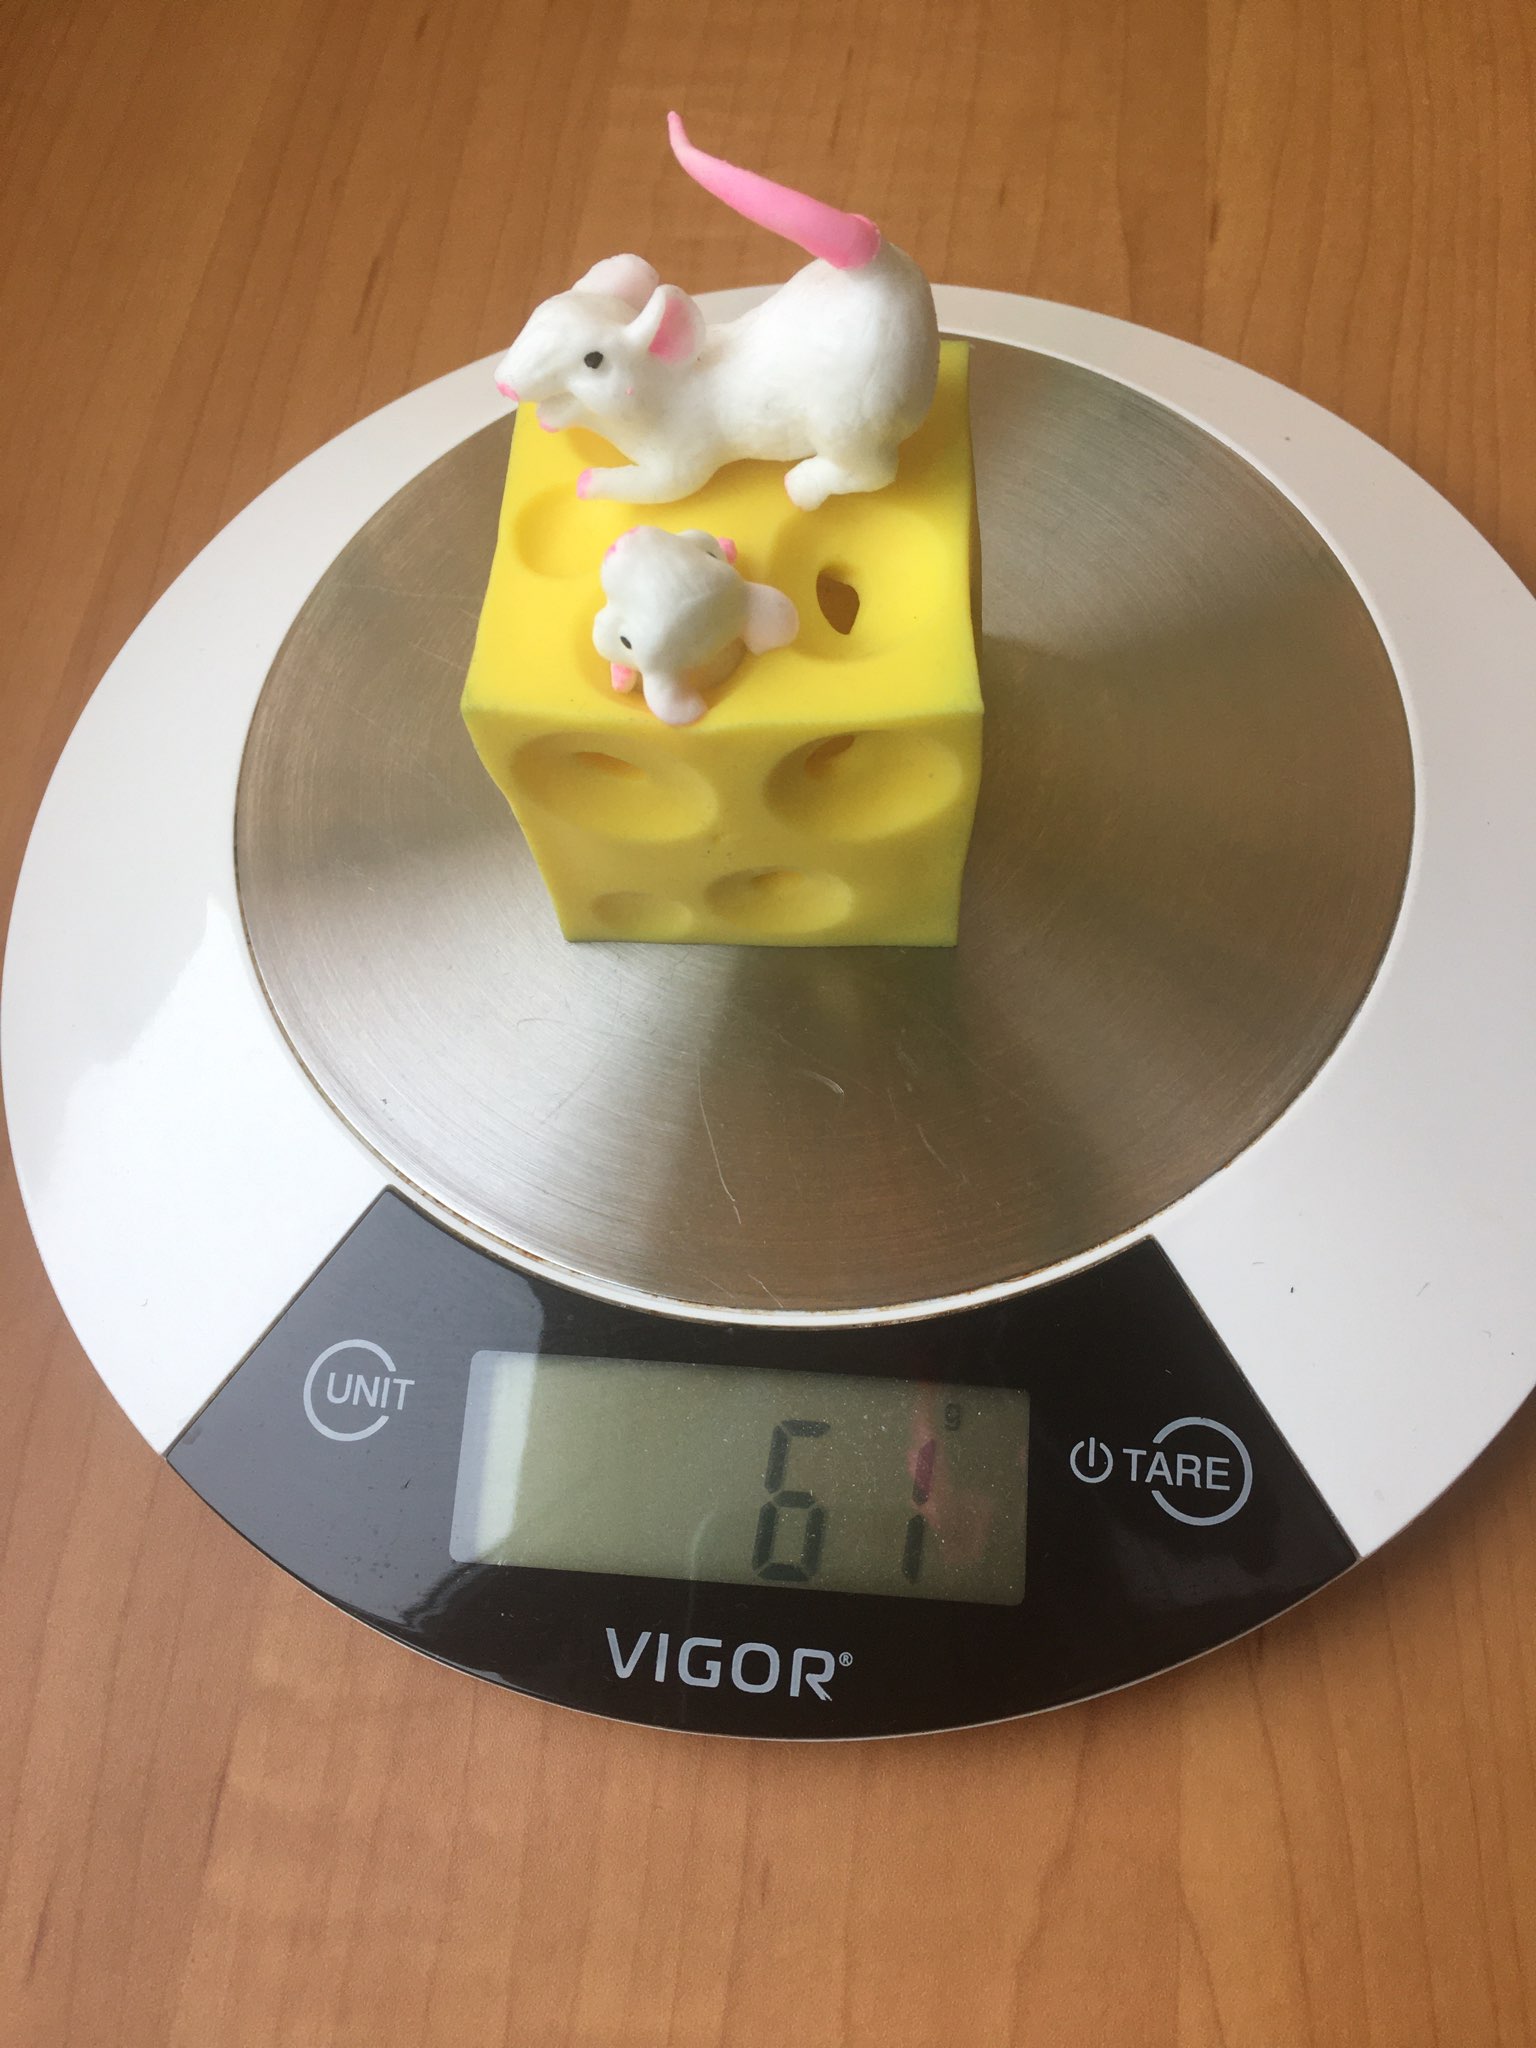 вес игрушки - мышки в сыре